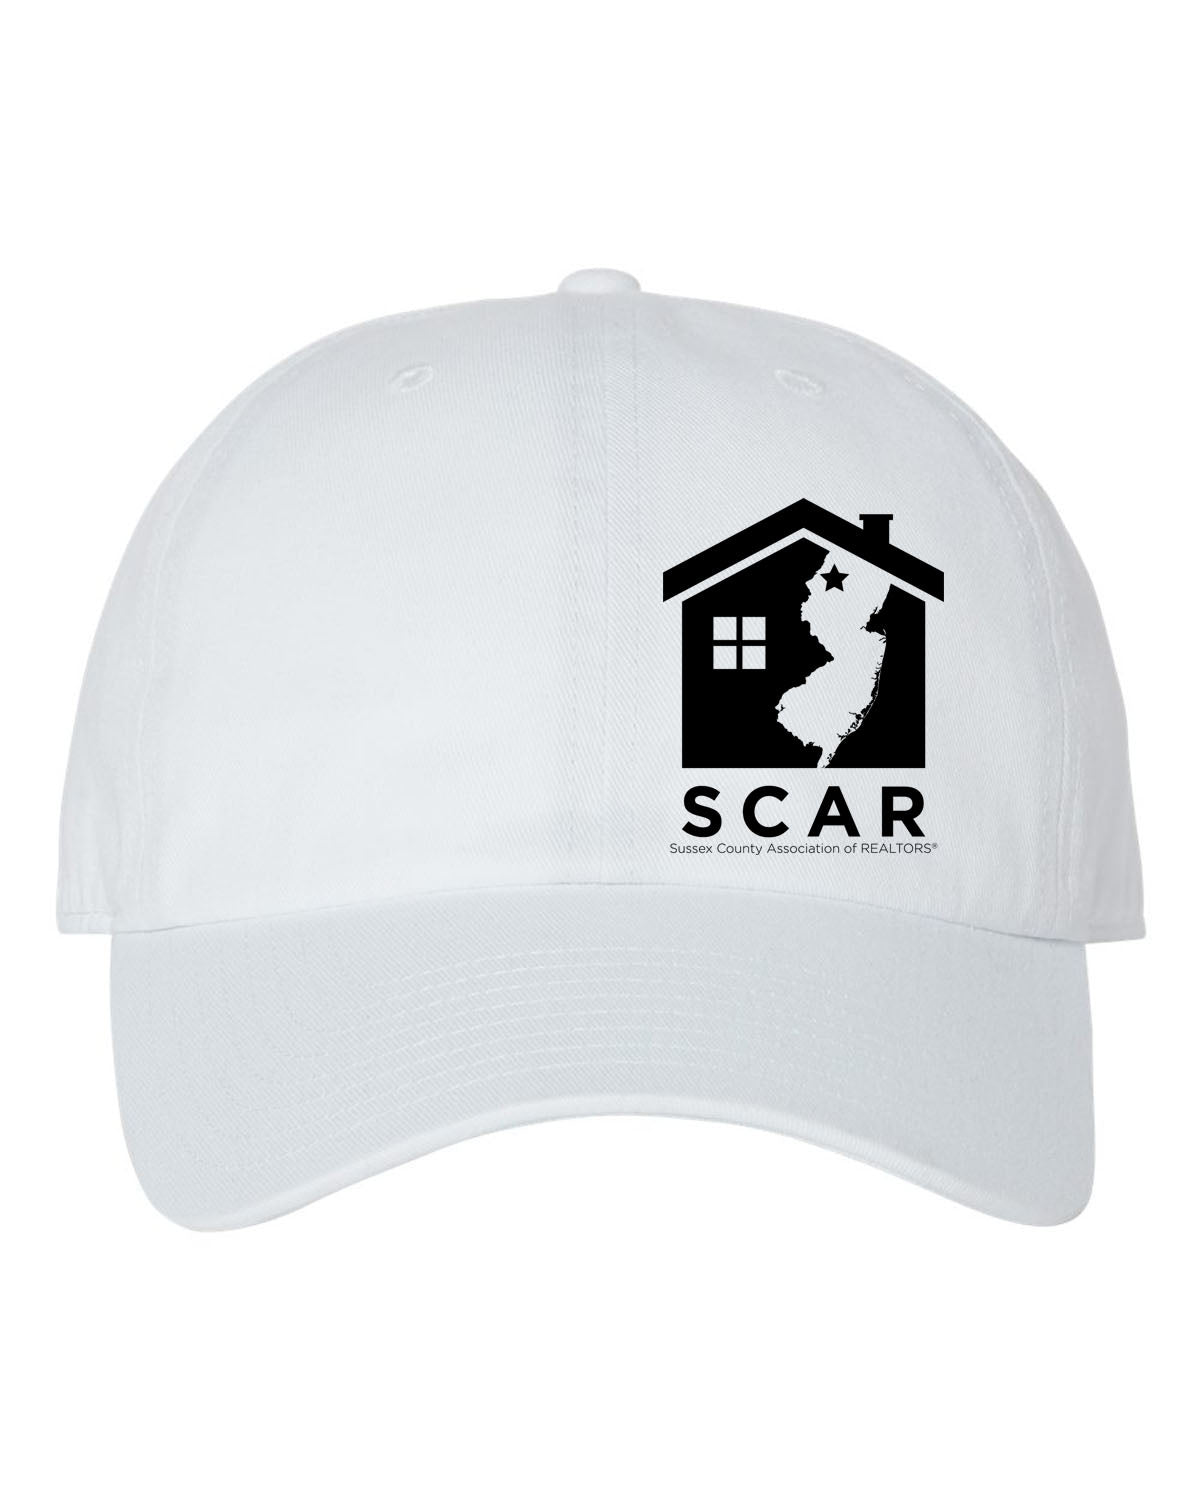 SCAR Design 1 Trucker Hat